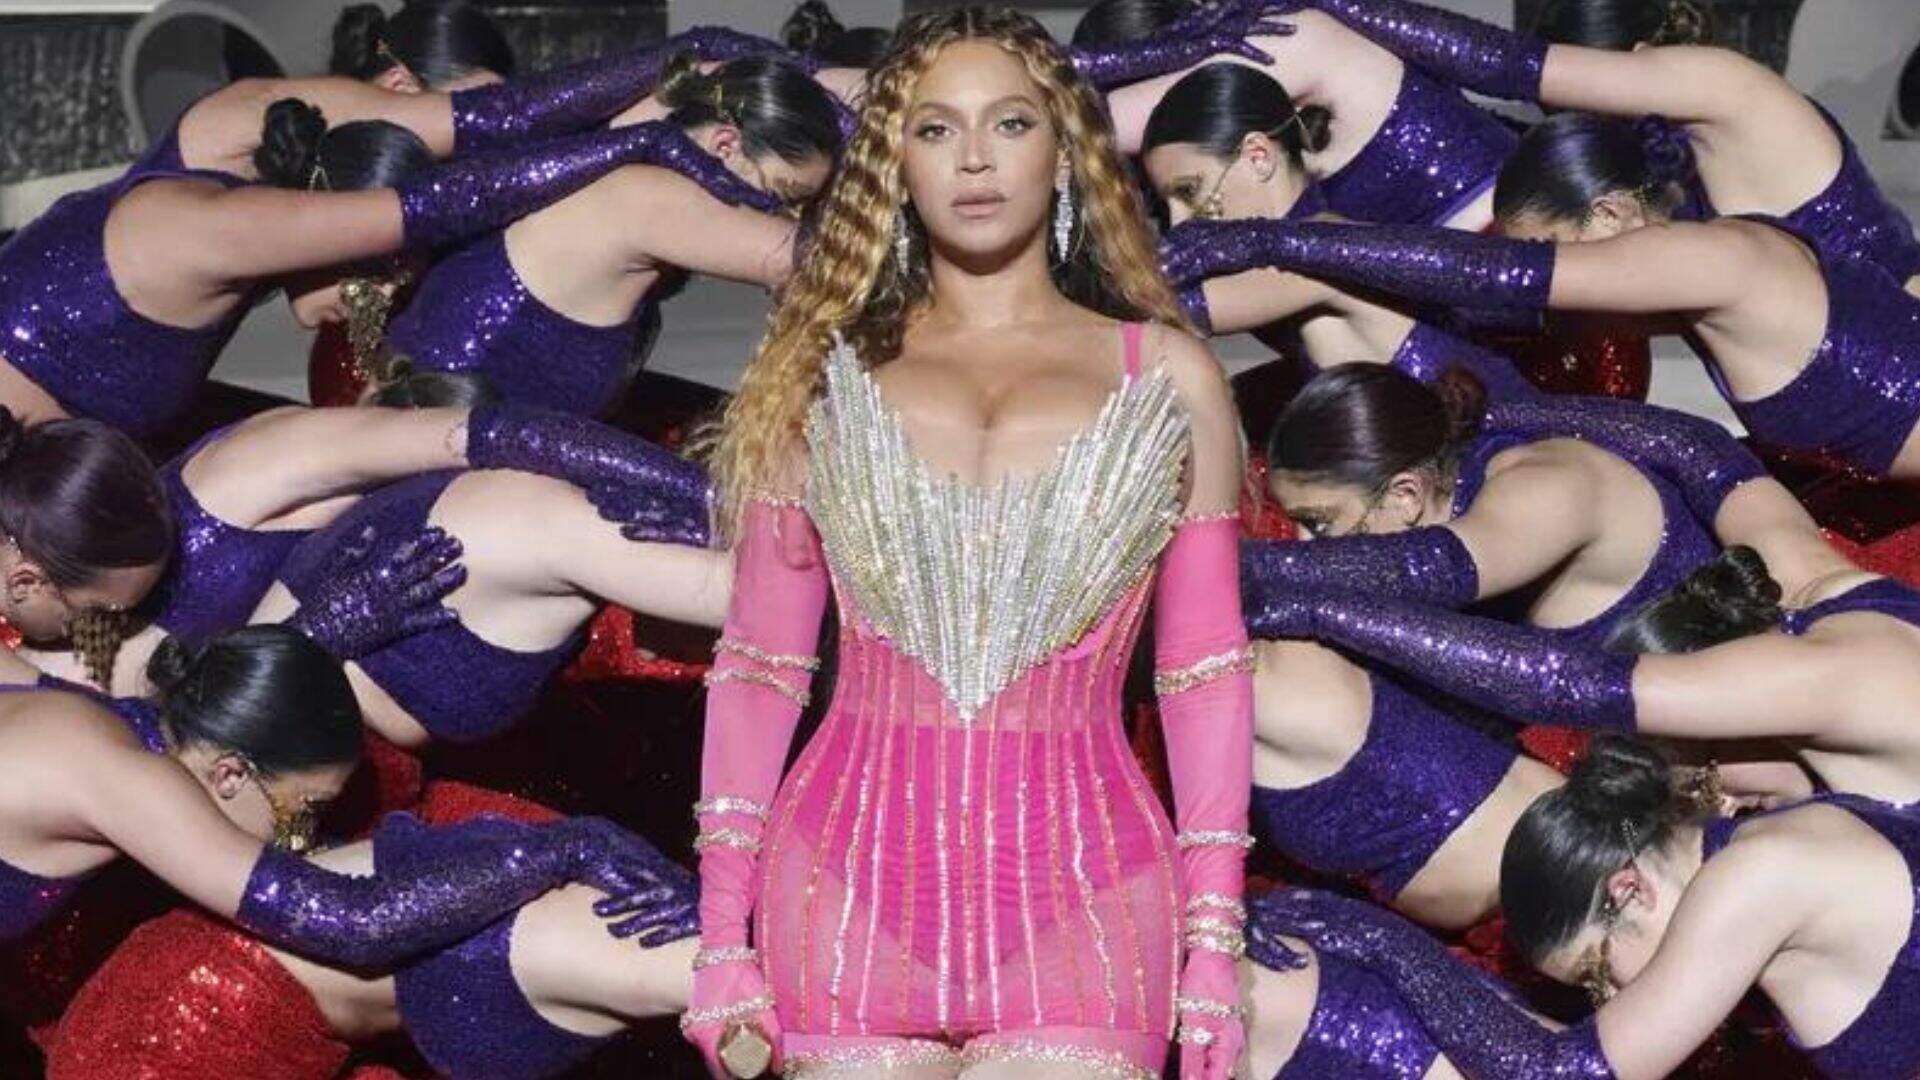 Puro luxo! Beyoncé usou R$ 39 milhões em joias no show de Dubai - Metropolitana FM